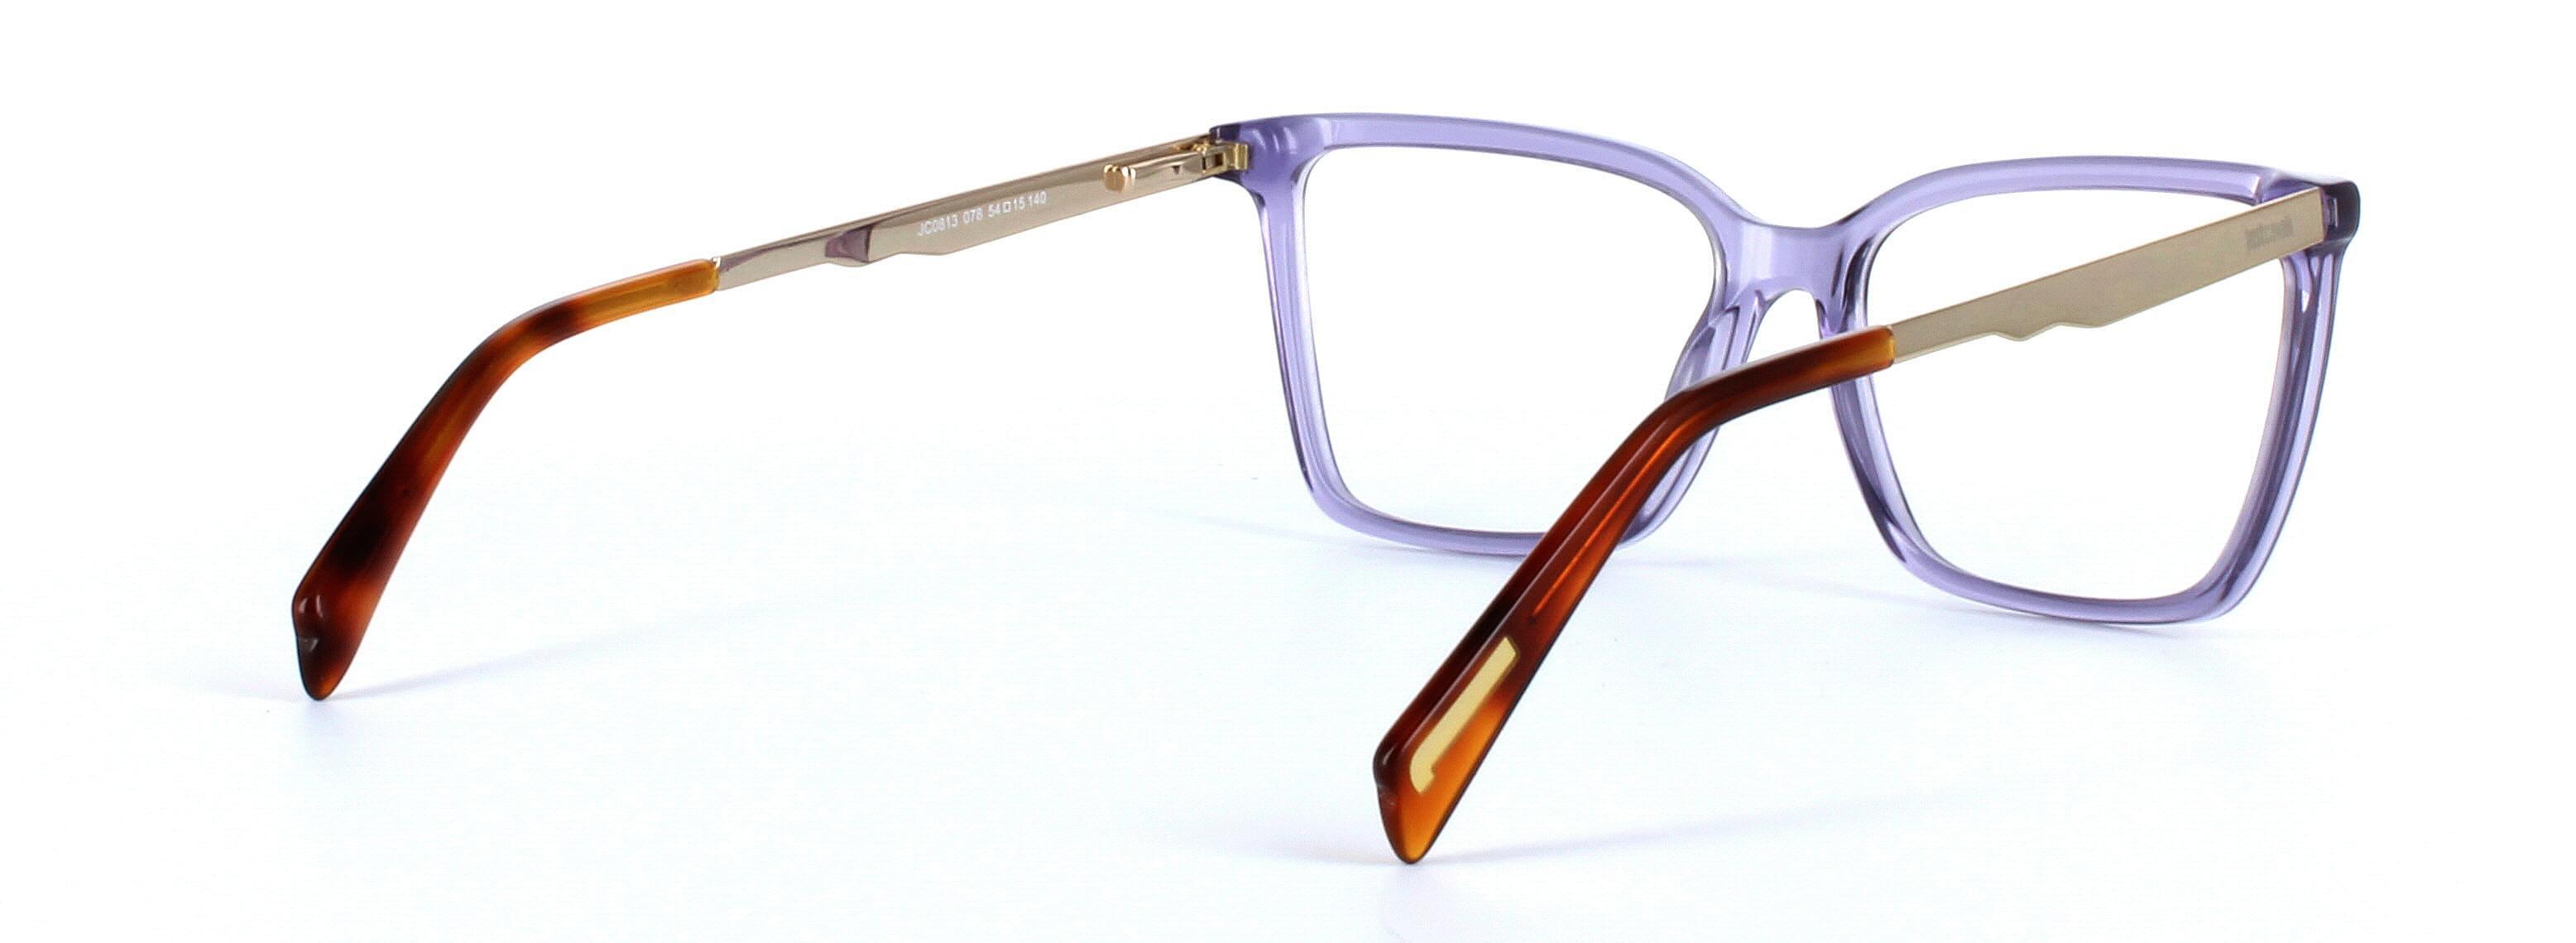 JUST CAVALLI (JC0813-078) Purple Full Rim Square Acetate Glasses - Image View 4